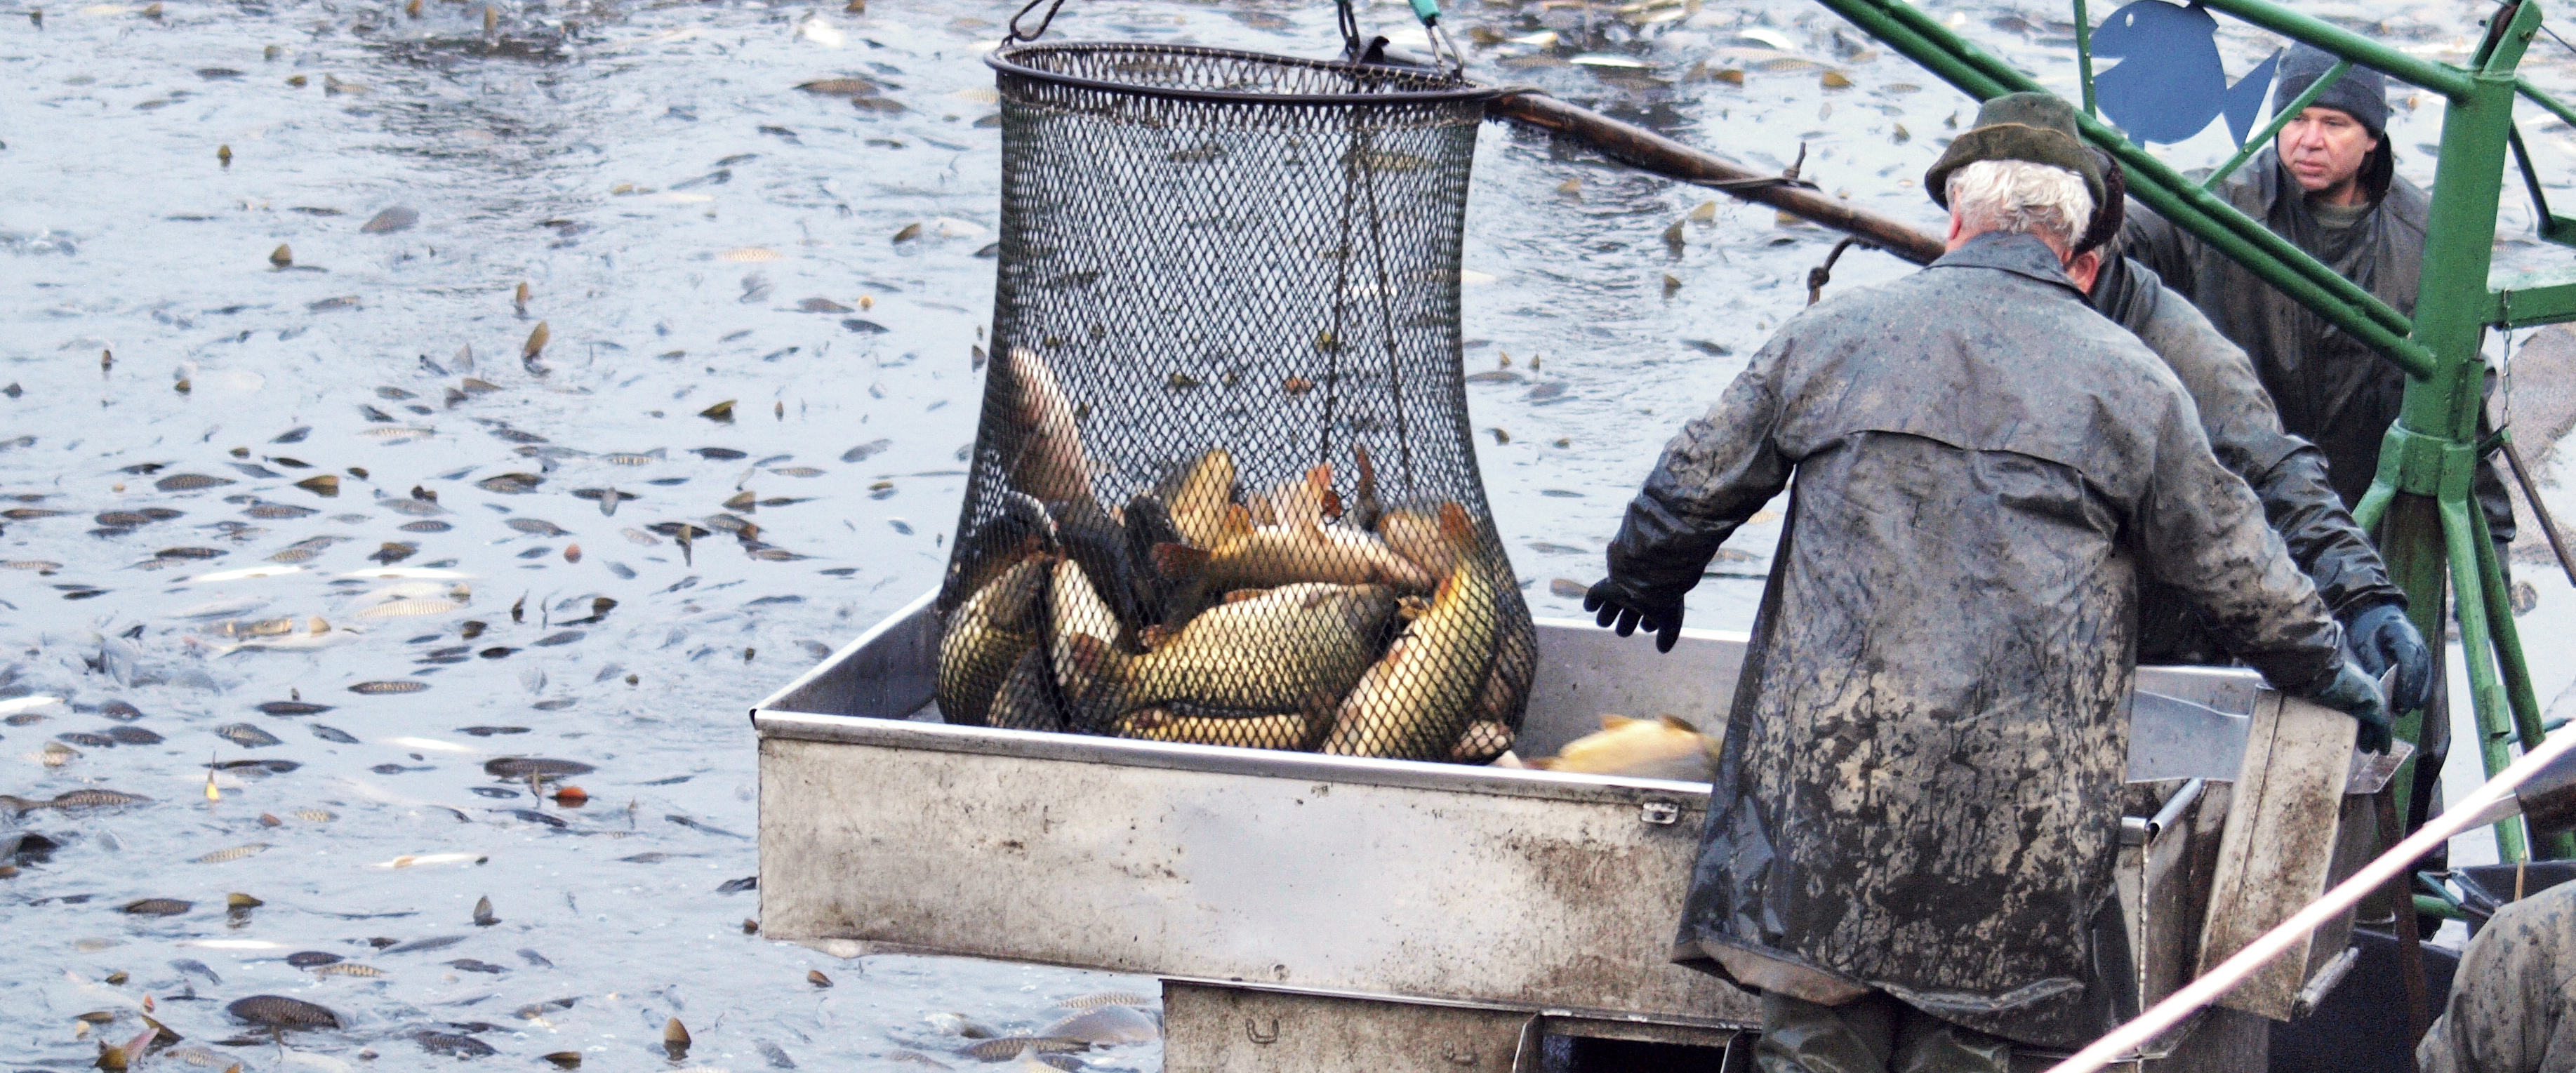 Výlov ryb | Rybářství Doksy